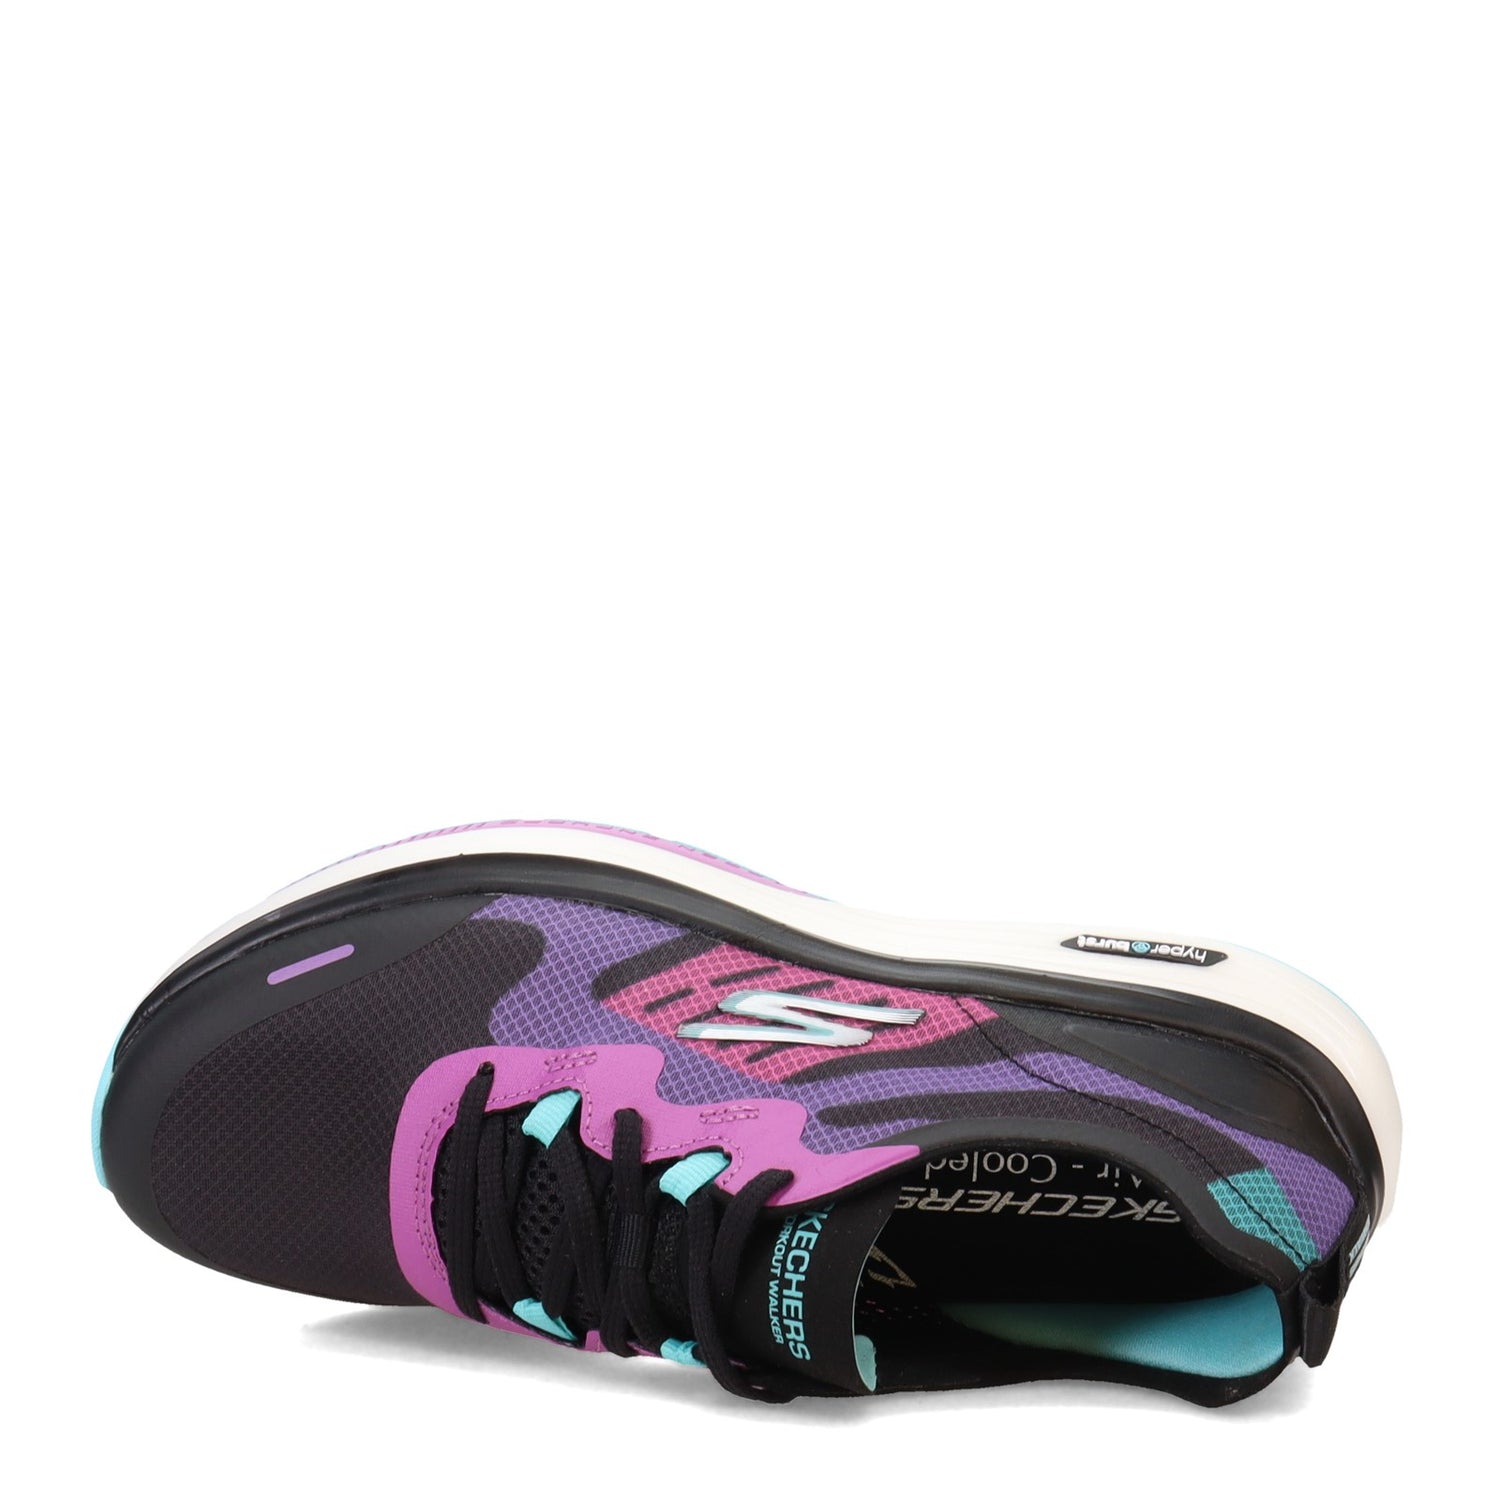 Peltz Shoes  Women's Skechers GO WALK Workout - Galaxy Motion Walking Shoe BLACK MULTI 124939-BKMT